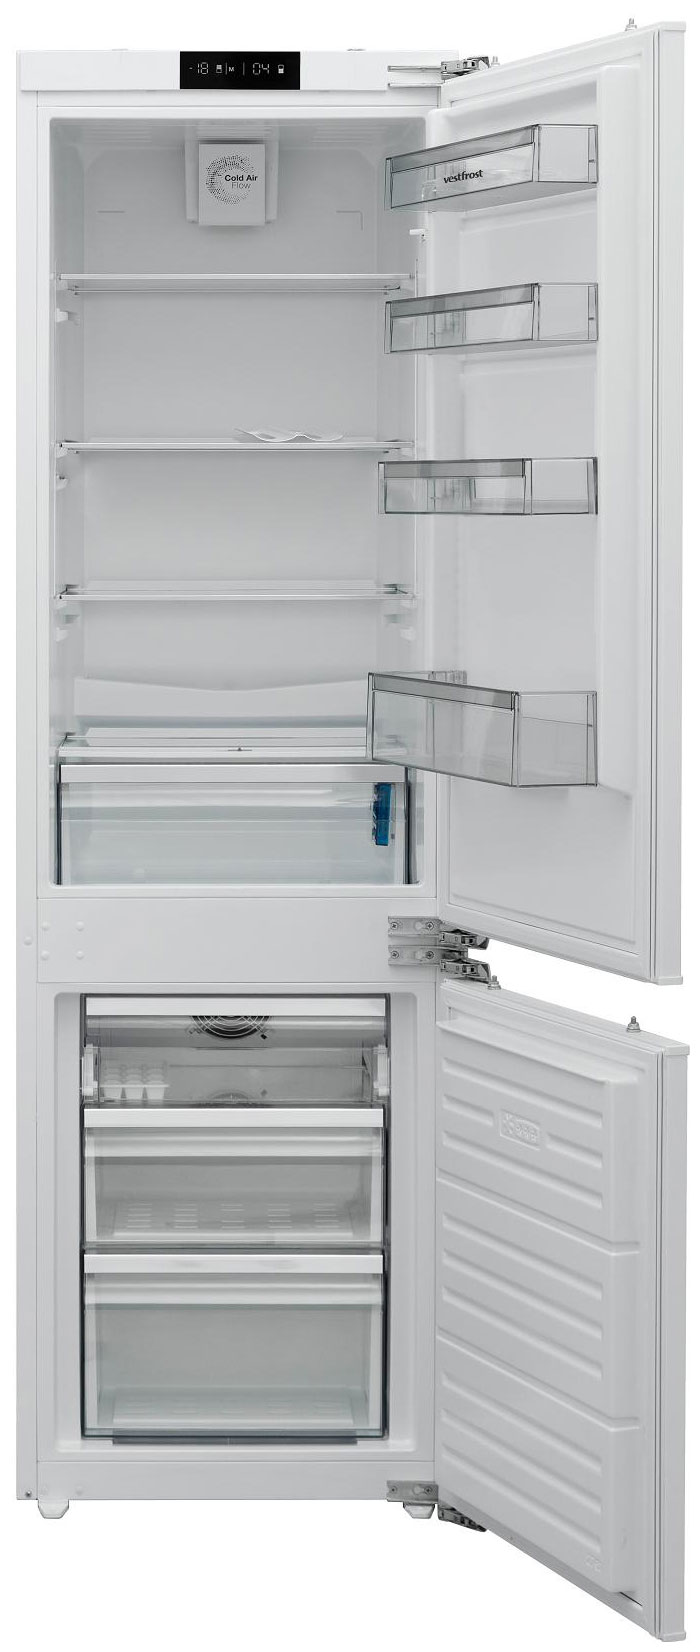 Встраиваемый двухкамерный холодильник Vestfrost VFBI17F00 встраиваемый двухкамерный холодильник bosch serie 4 vitafresh kiv86vf31r